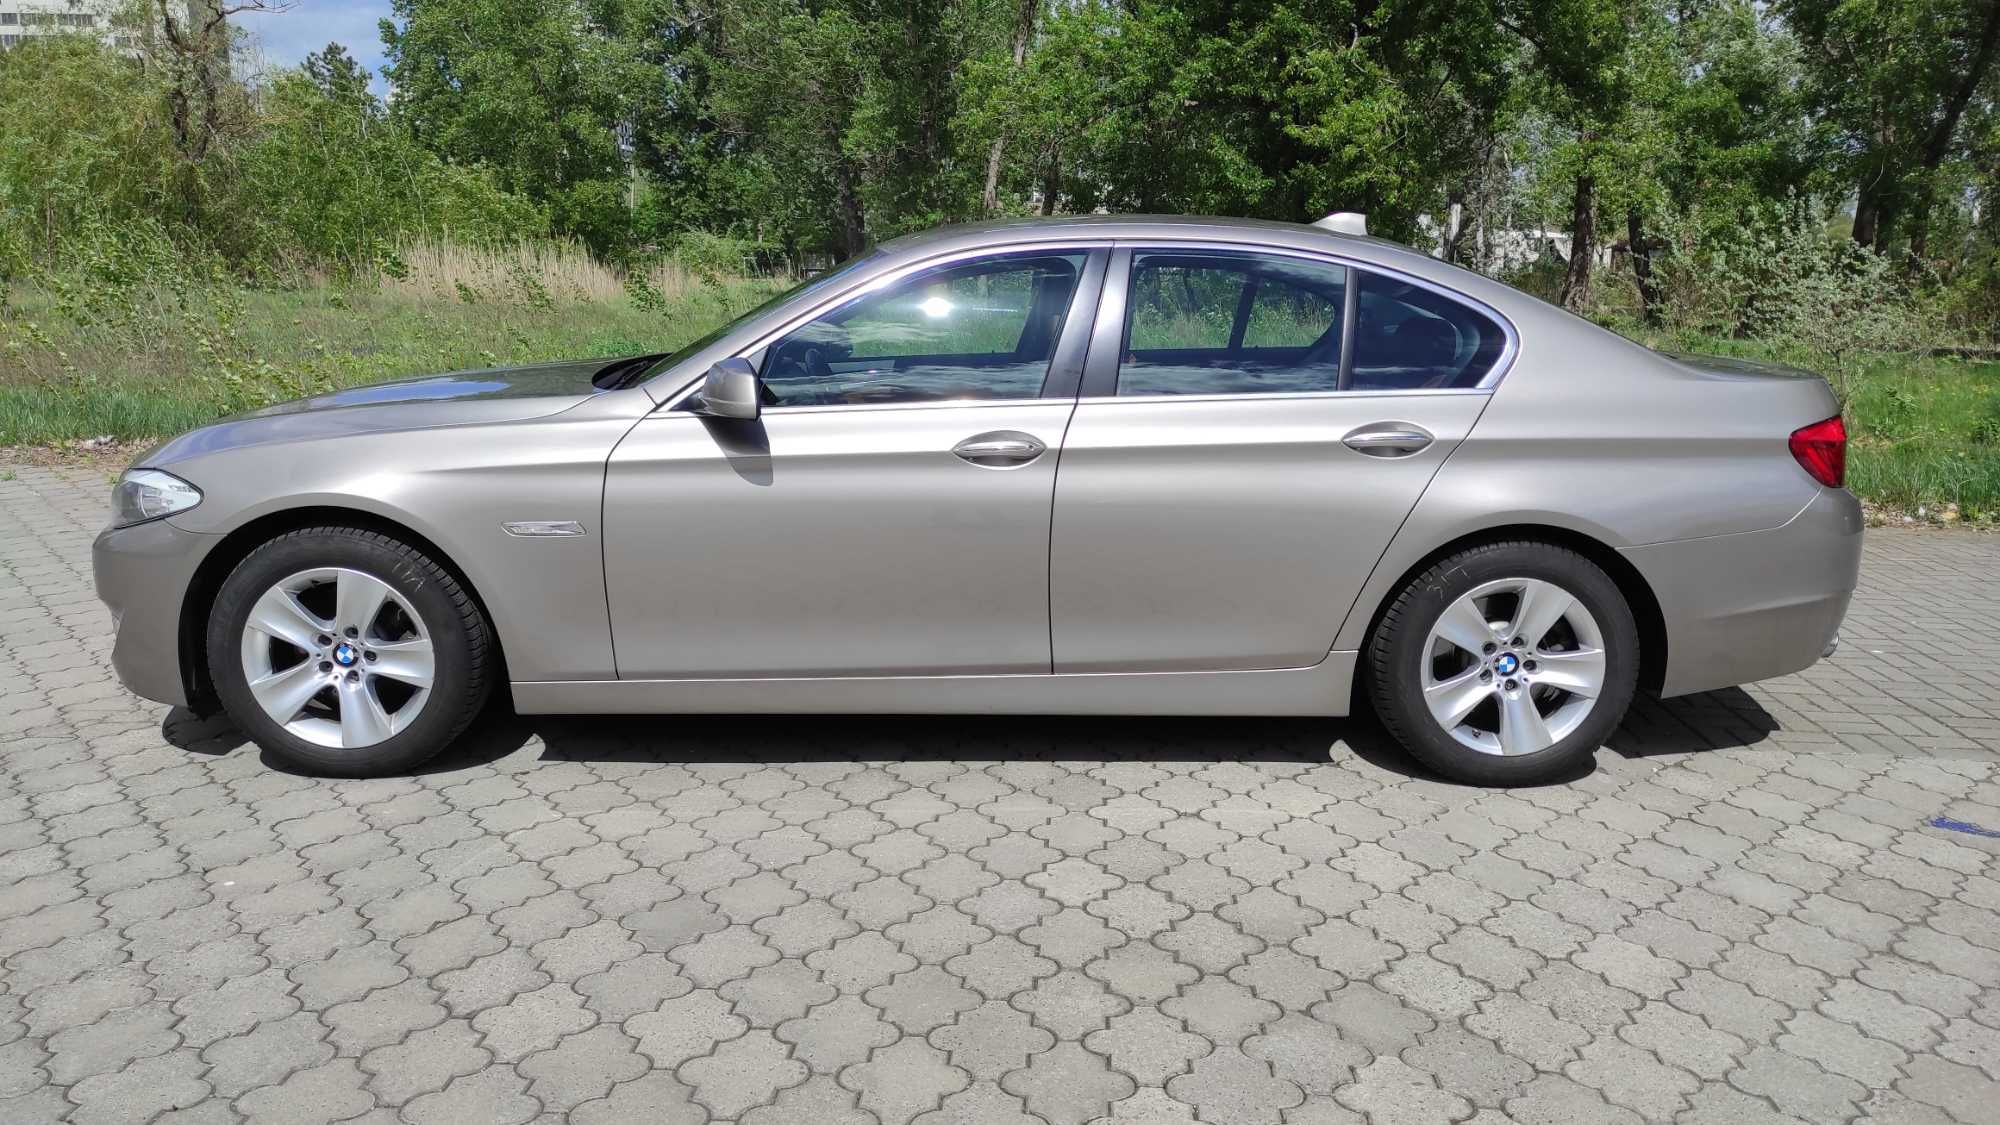 BMW 520, 2л.,бензин